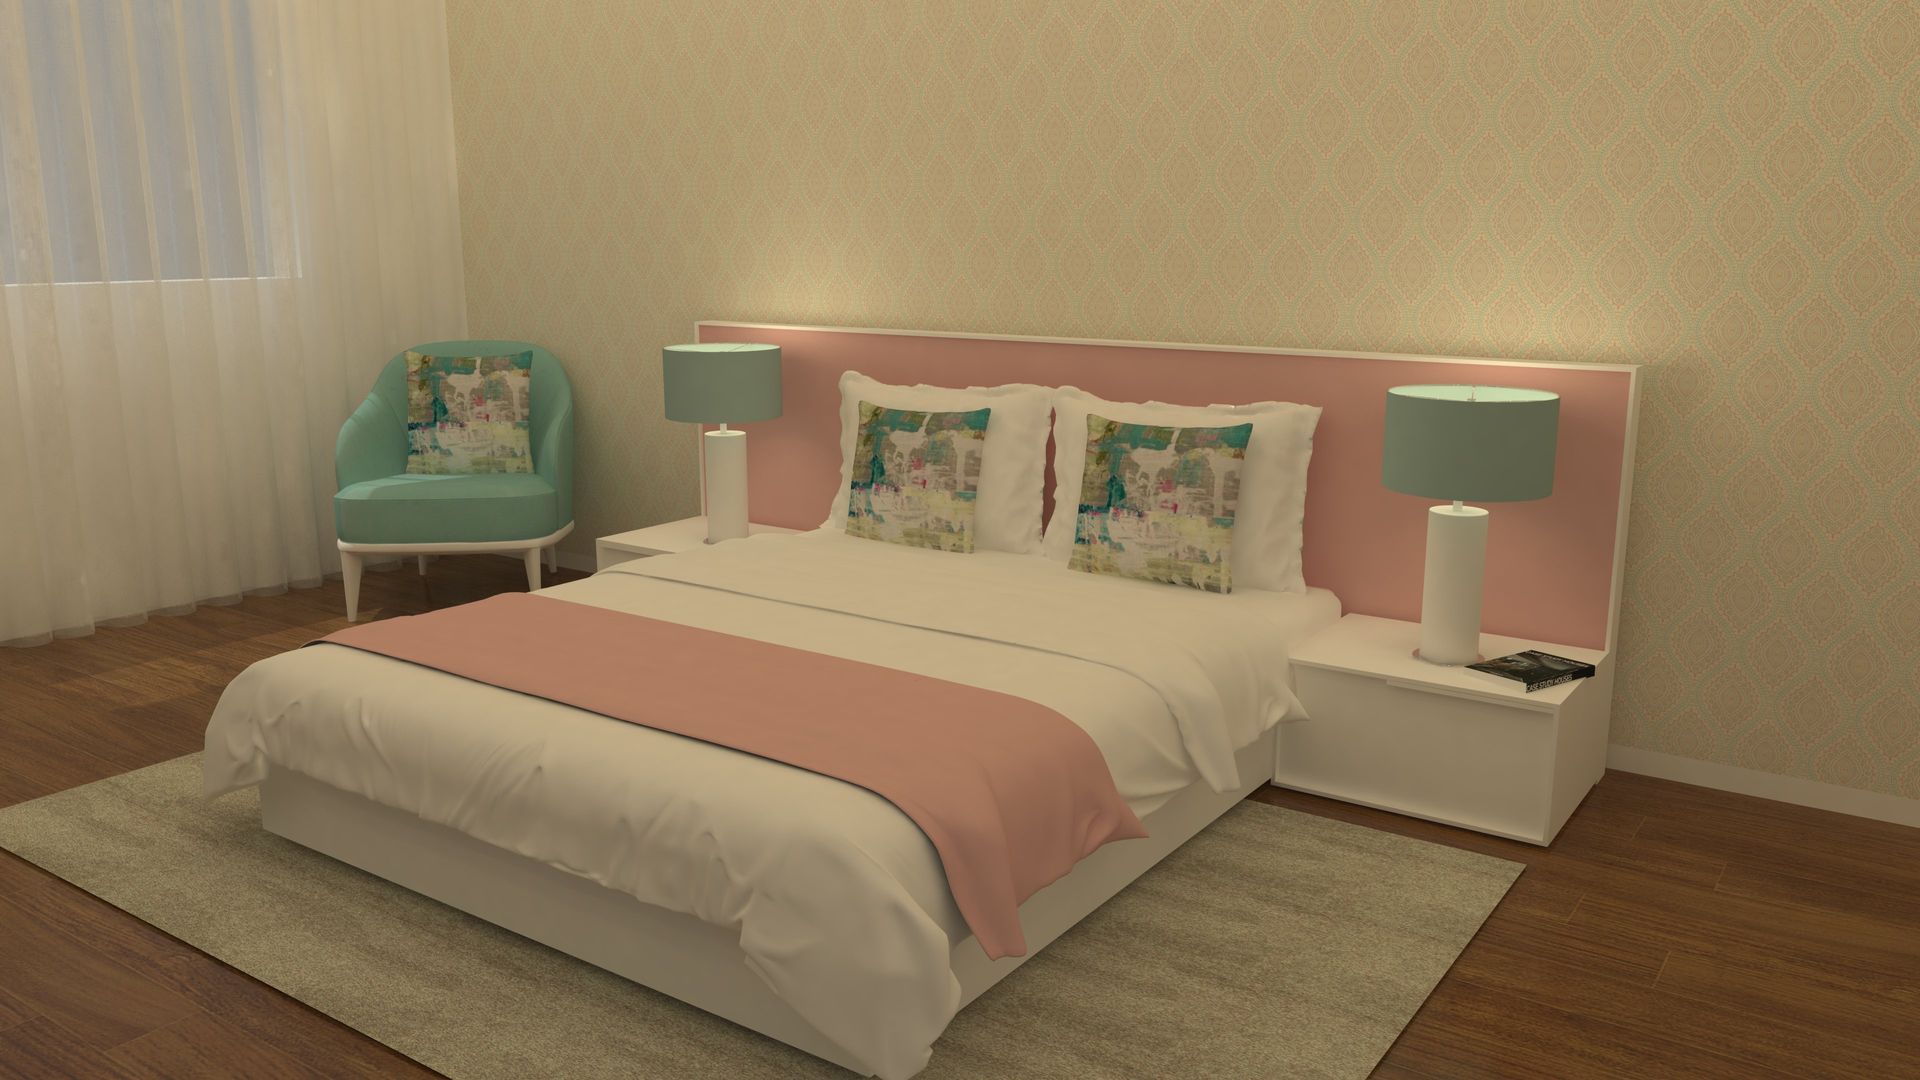 Um quarto com toque feminino! Casativa Interiores Quartos modernos quarto de casal,quarto feminino,decoração,design de interiores,rosa